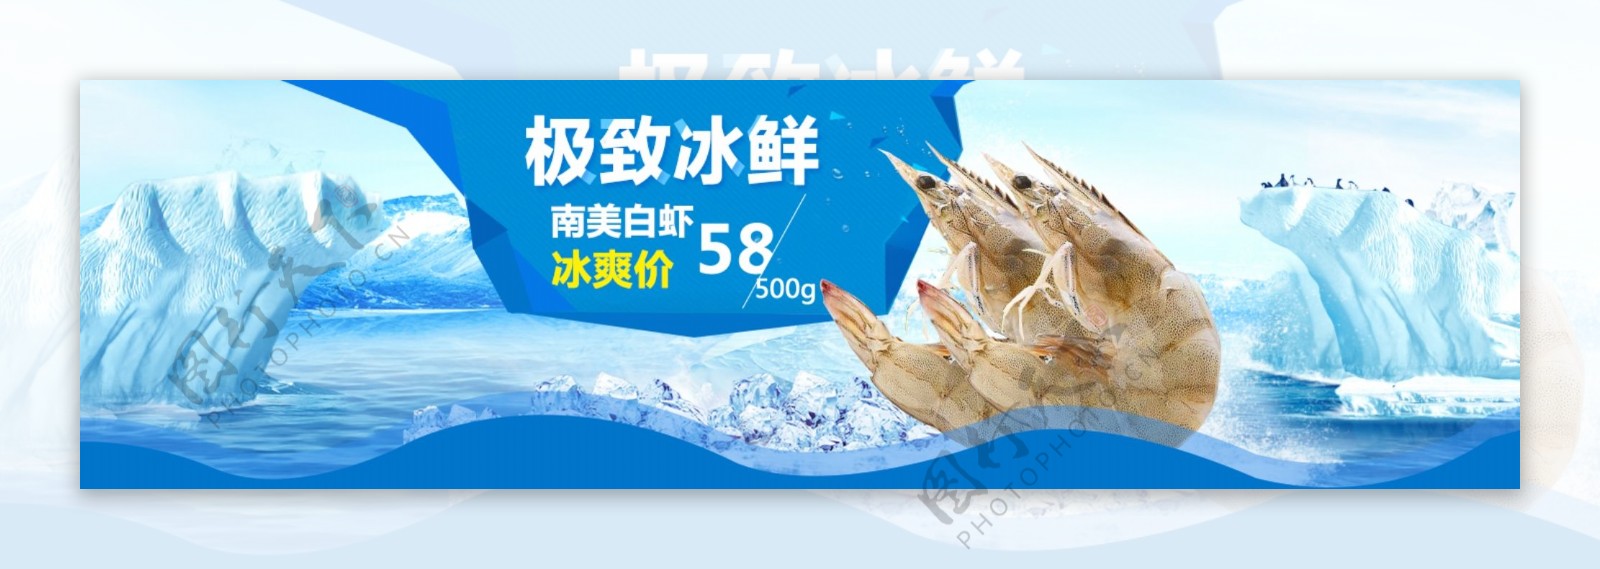 鲜虾冰爽促销广告图片